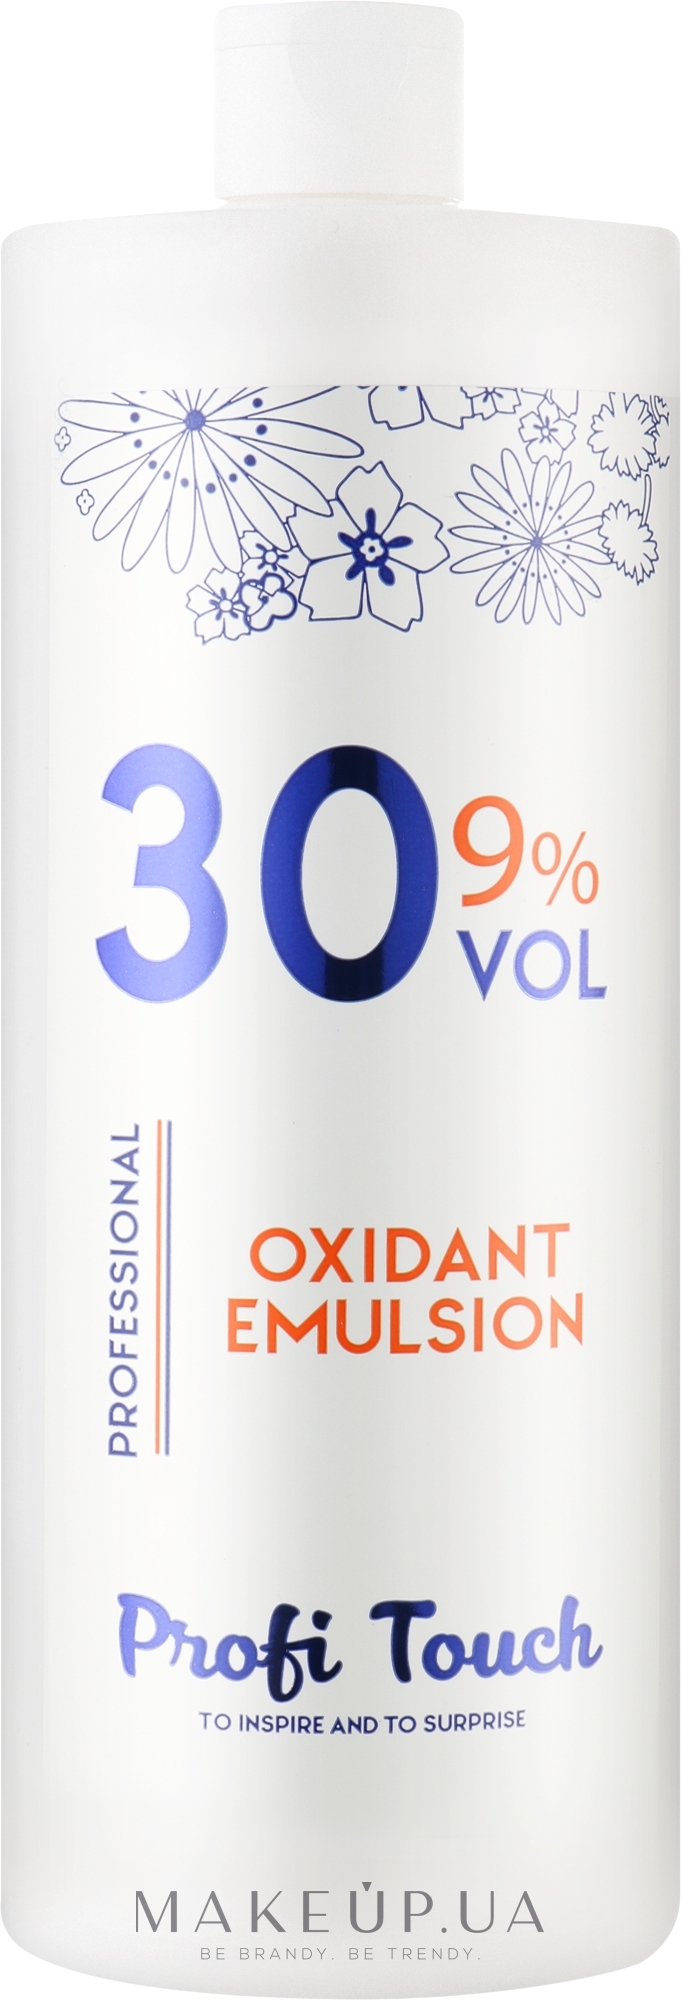 Гель-окислювач 30 vol 9% - Profi Touch Oxidant Emulsion — фото 1000g